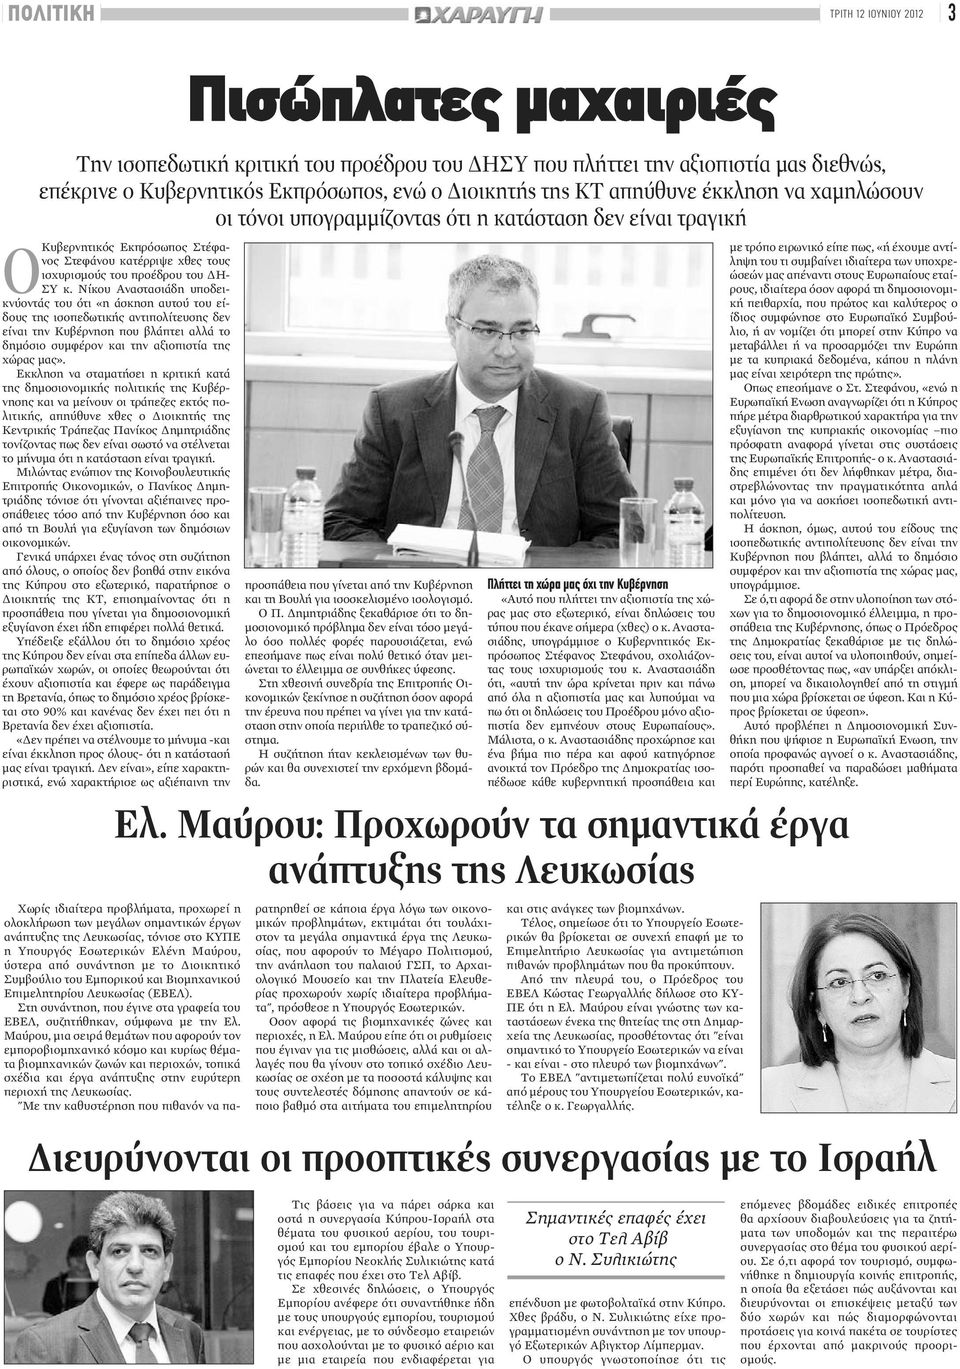 Εκκληση να σταματήσει η κριτική κατά της δημοσιονομικής πολιτικής της Κυβέρνησης και να μείνουν οι τράπεζες εκτός πολιτικής, απηύθυνε χθες ο Διοικητής της Κεντρικής Τράπεζας Πανίκος Δημητριάδης